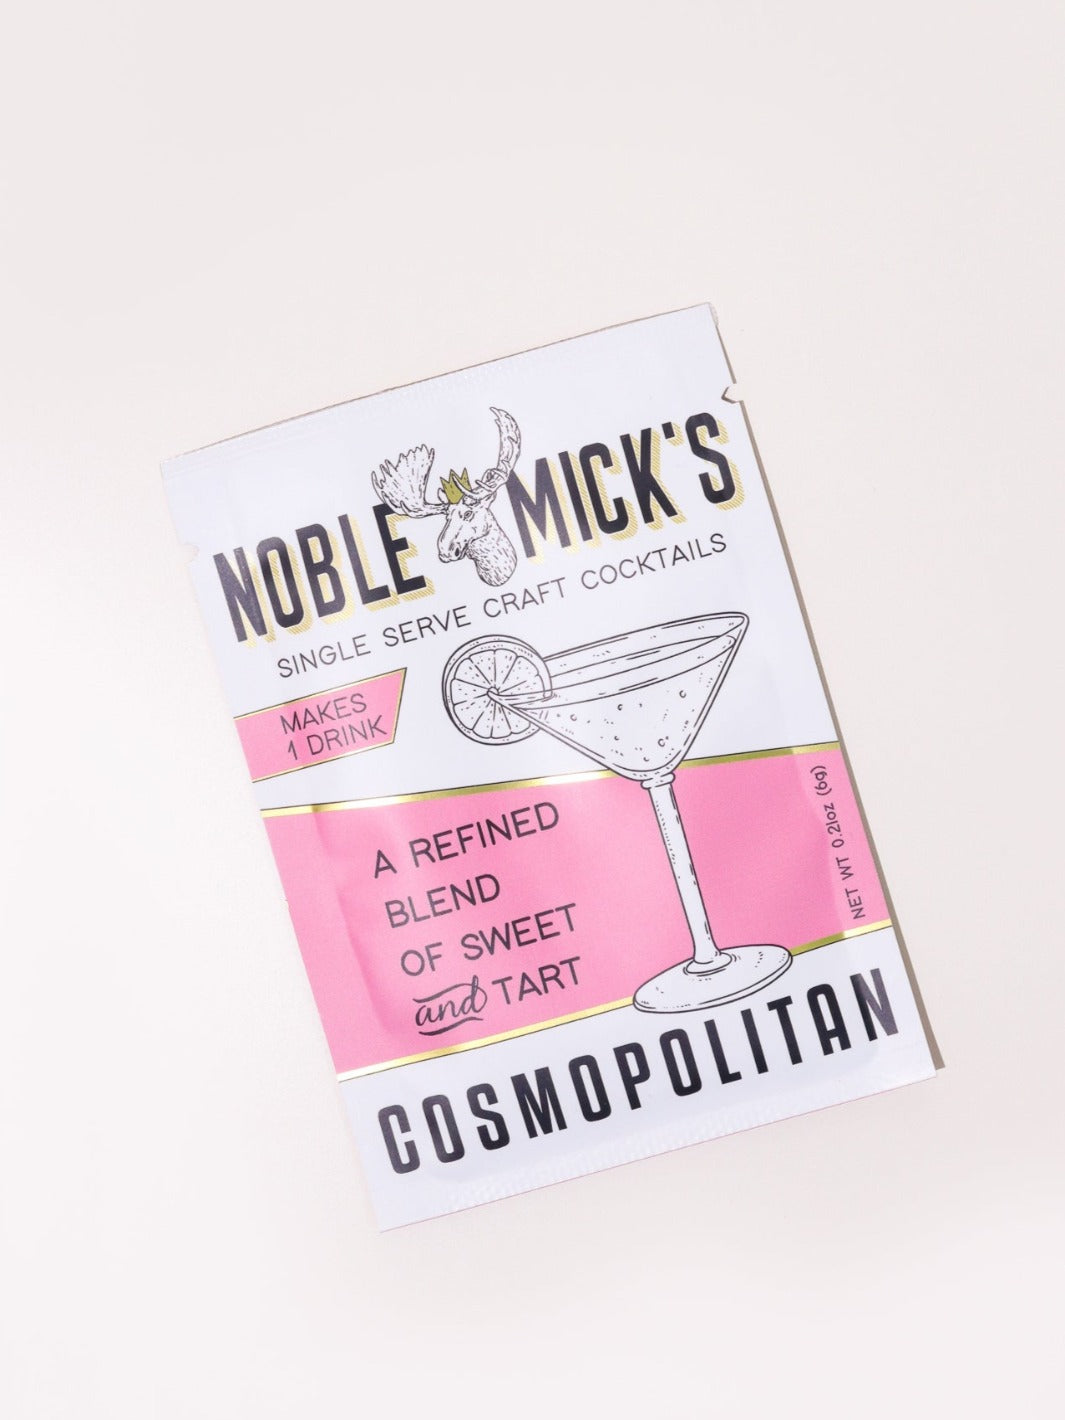 Noble Mick's Cosmopolitan